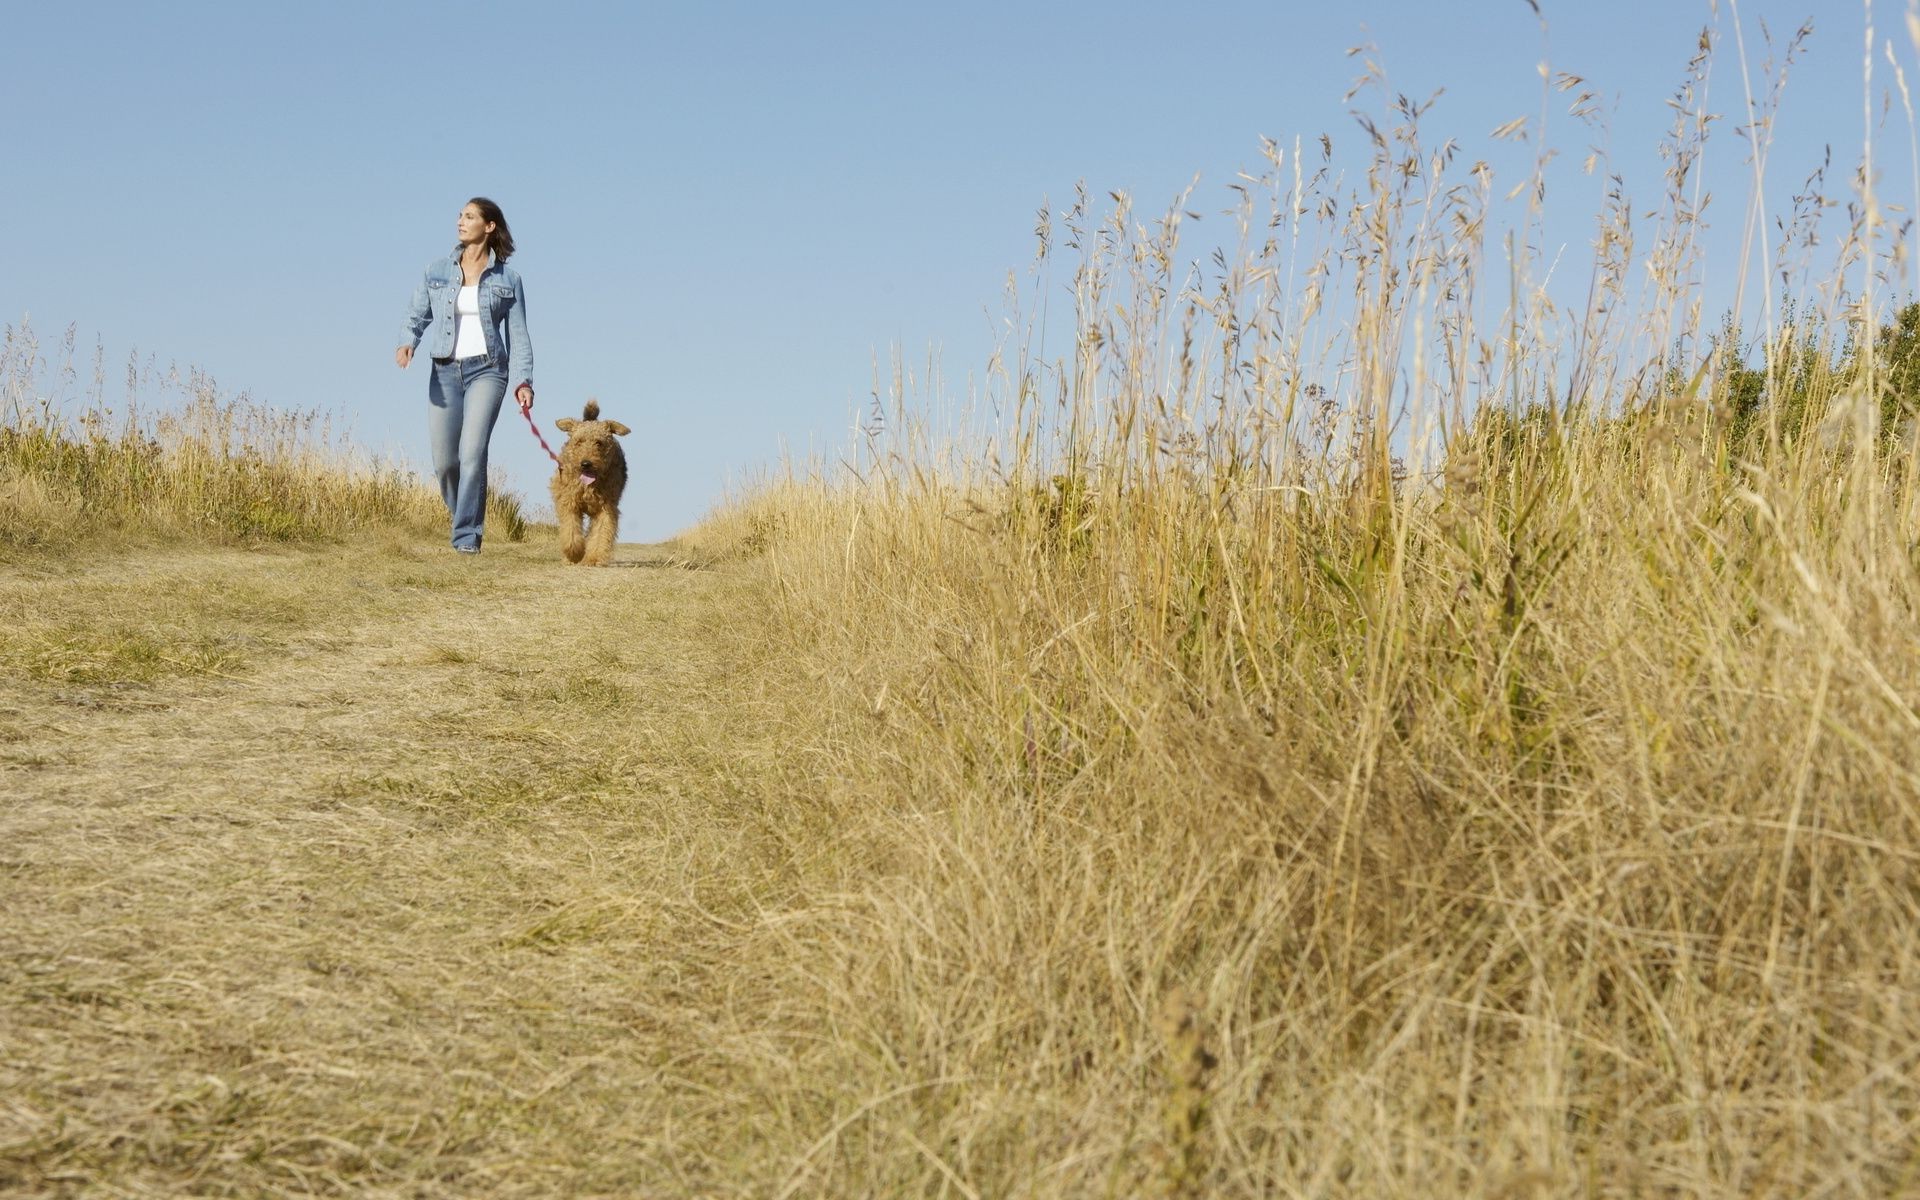 другие девушки трава поле млекопитающее на открытом воздухе природа пейзаж сенокос собака животное сельской местности сельских лето небо дневной свет